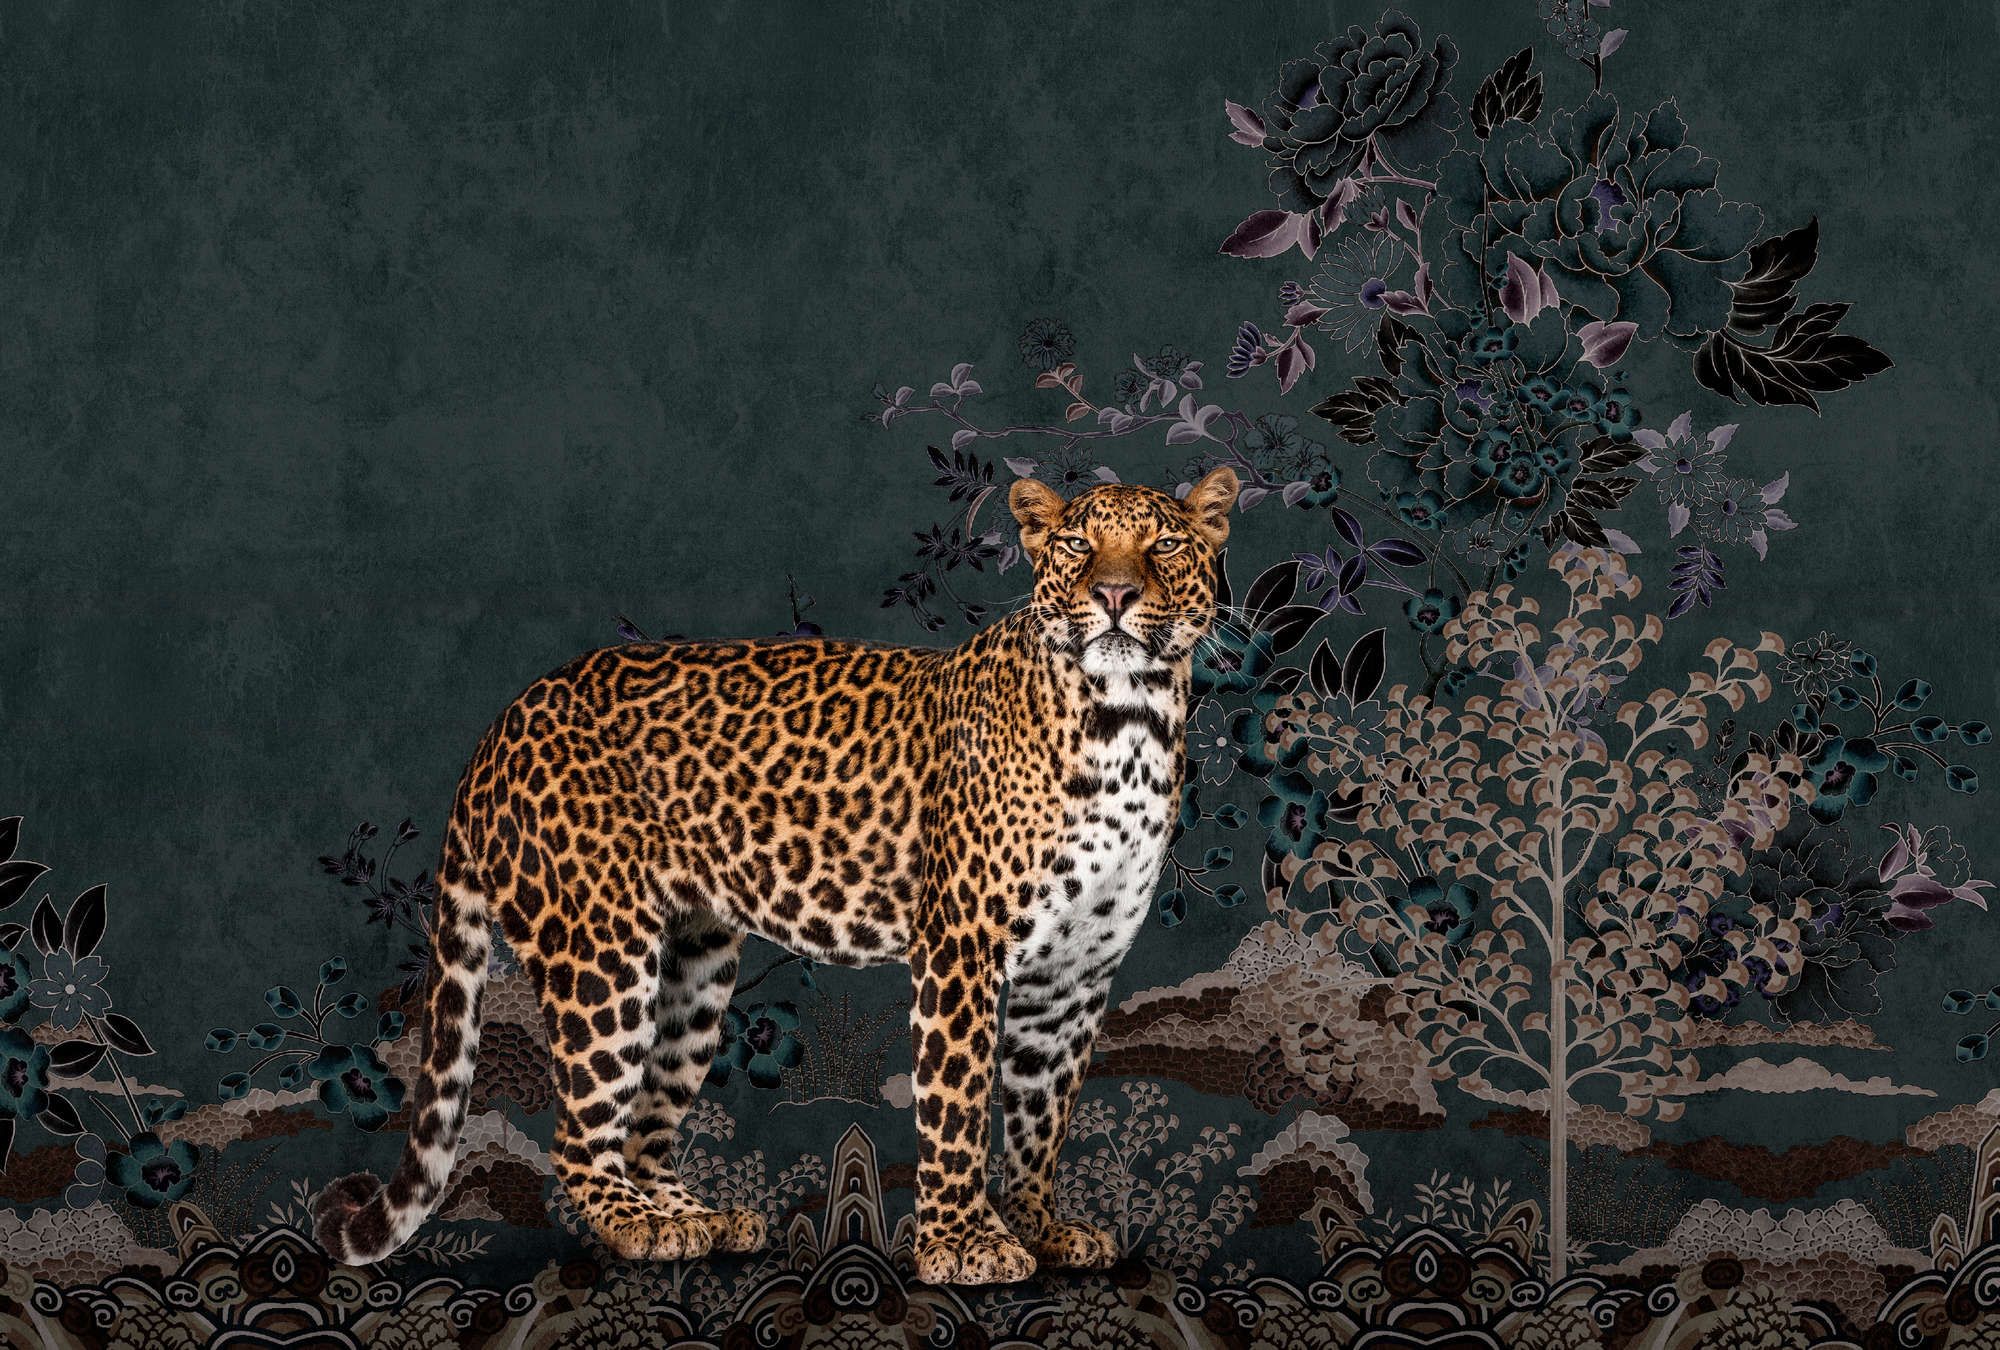             Fotomural »rani« - Motivo abstracto selva con leopardo - Material no tejido liso, ligeramente nacarado y brillante
        